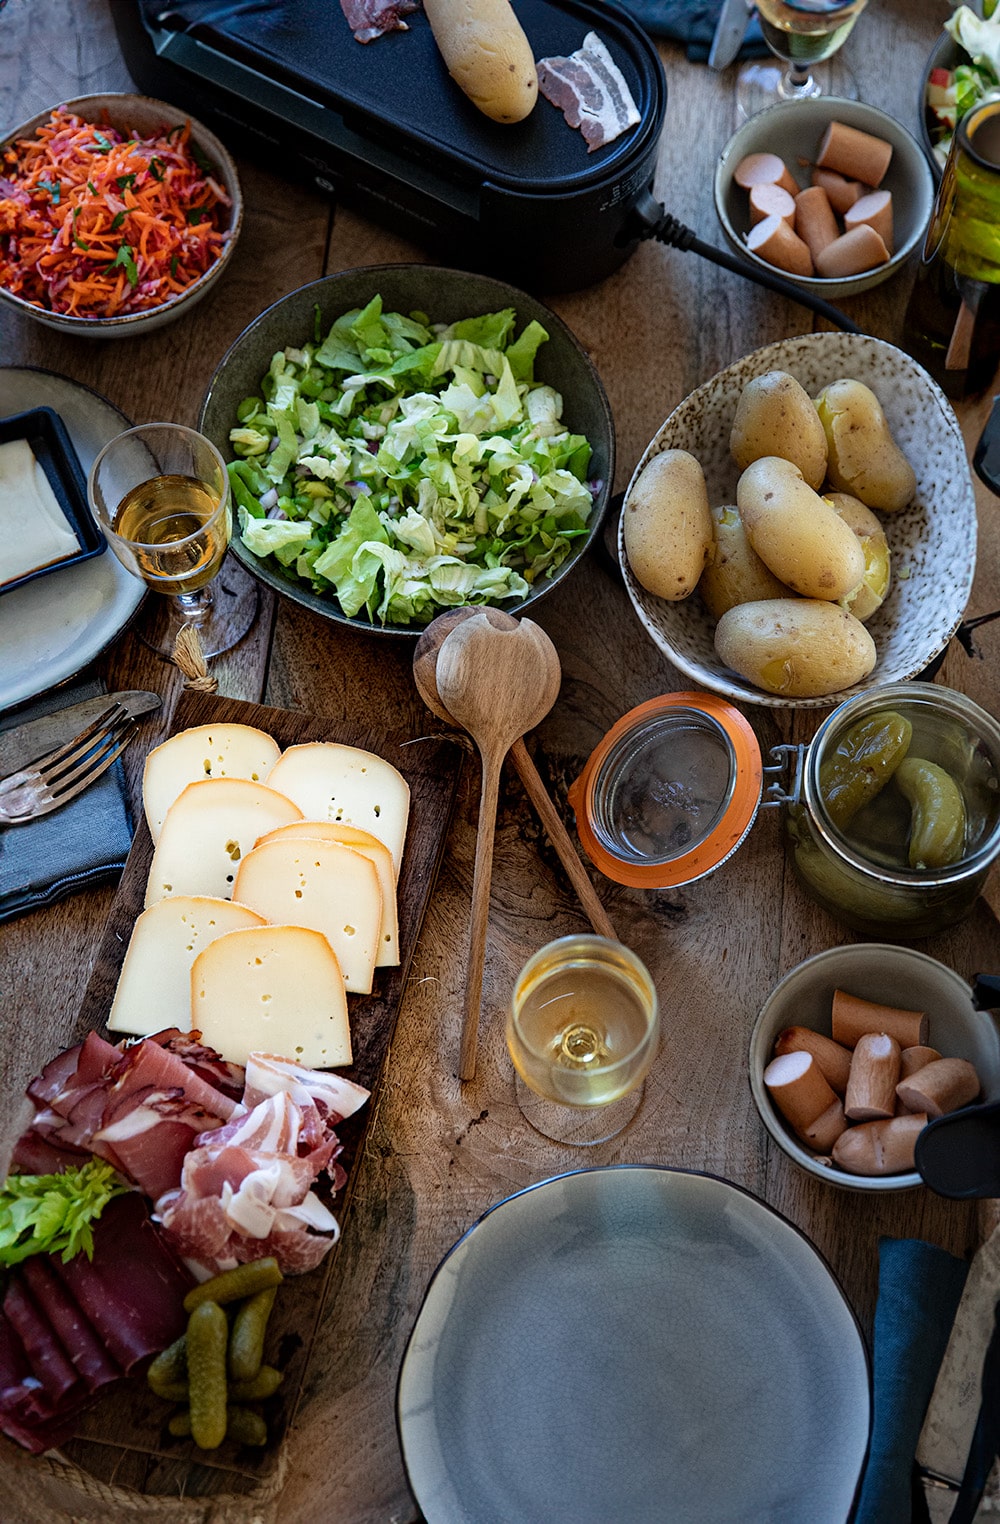 Raclette à l'italienne fromages et charcuteries - 1 personne